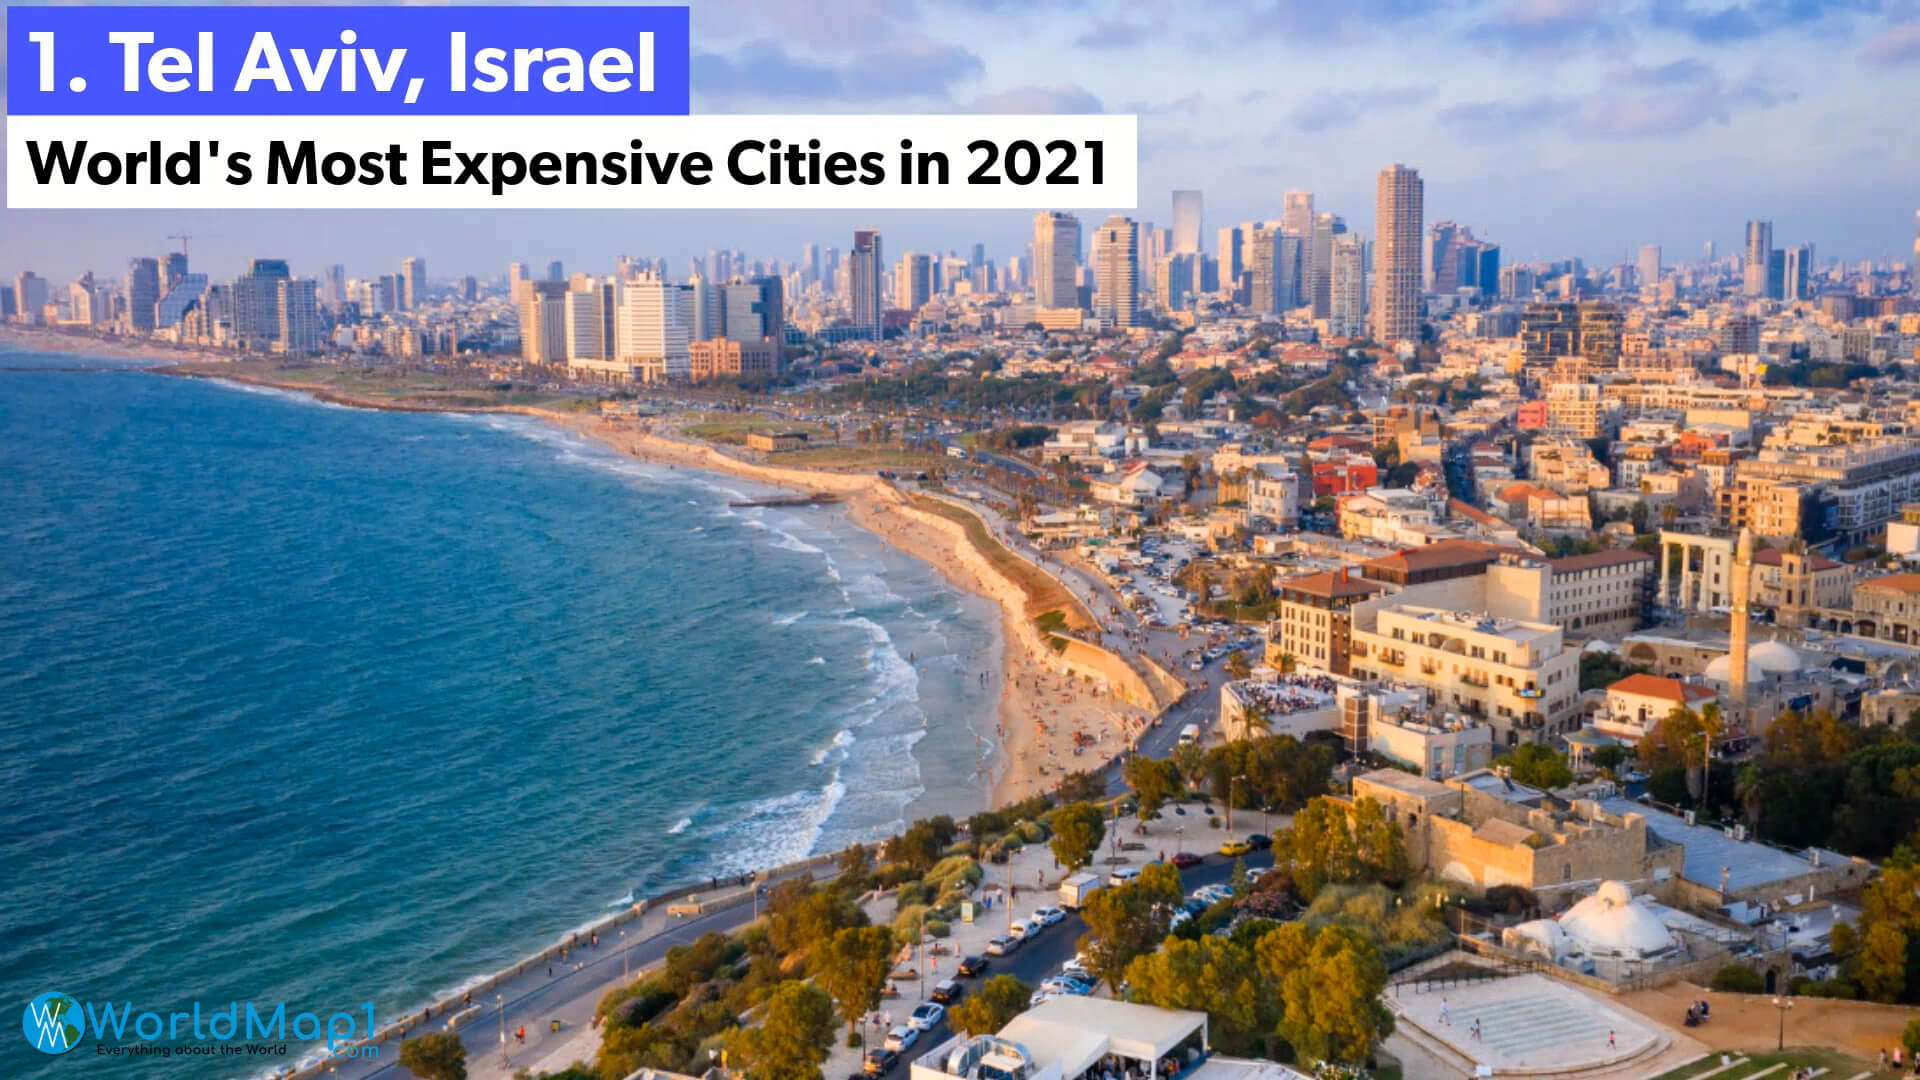 Les villes les plus chères du monde - Tel Aviv, Israel